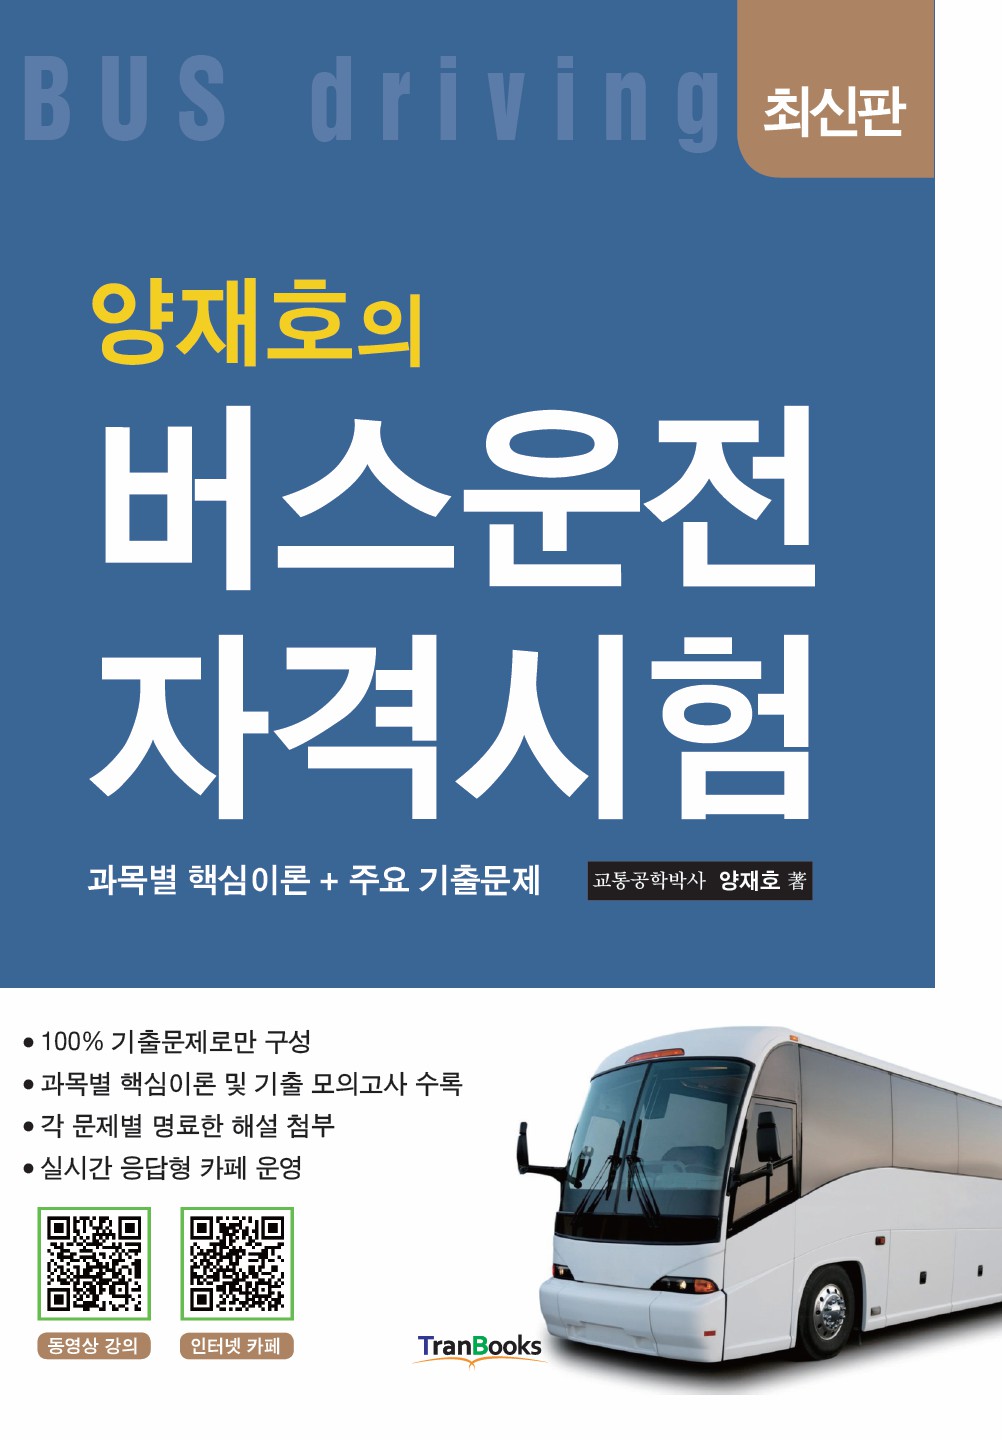 [패키지]버스운전자격시험(5일)